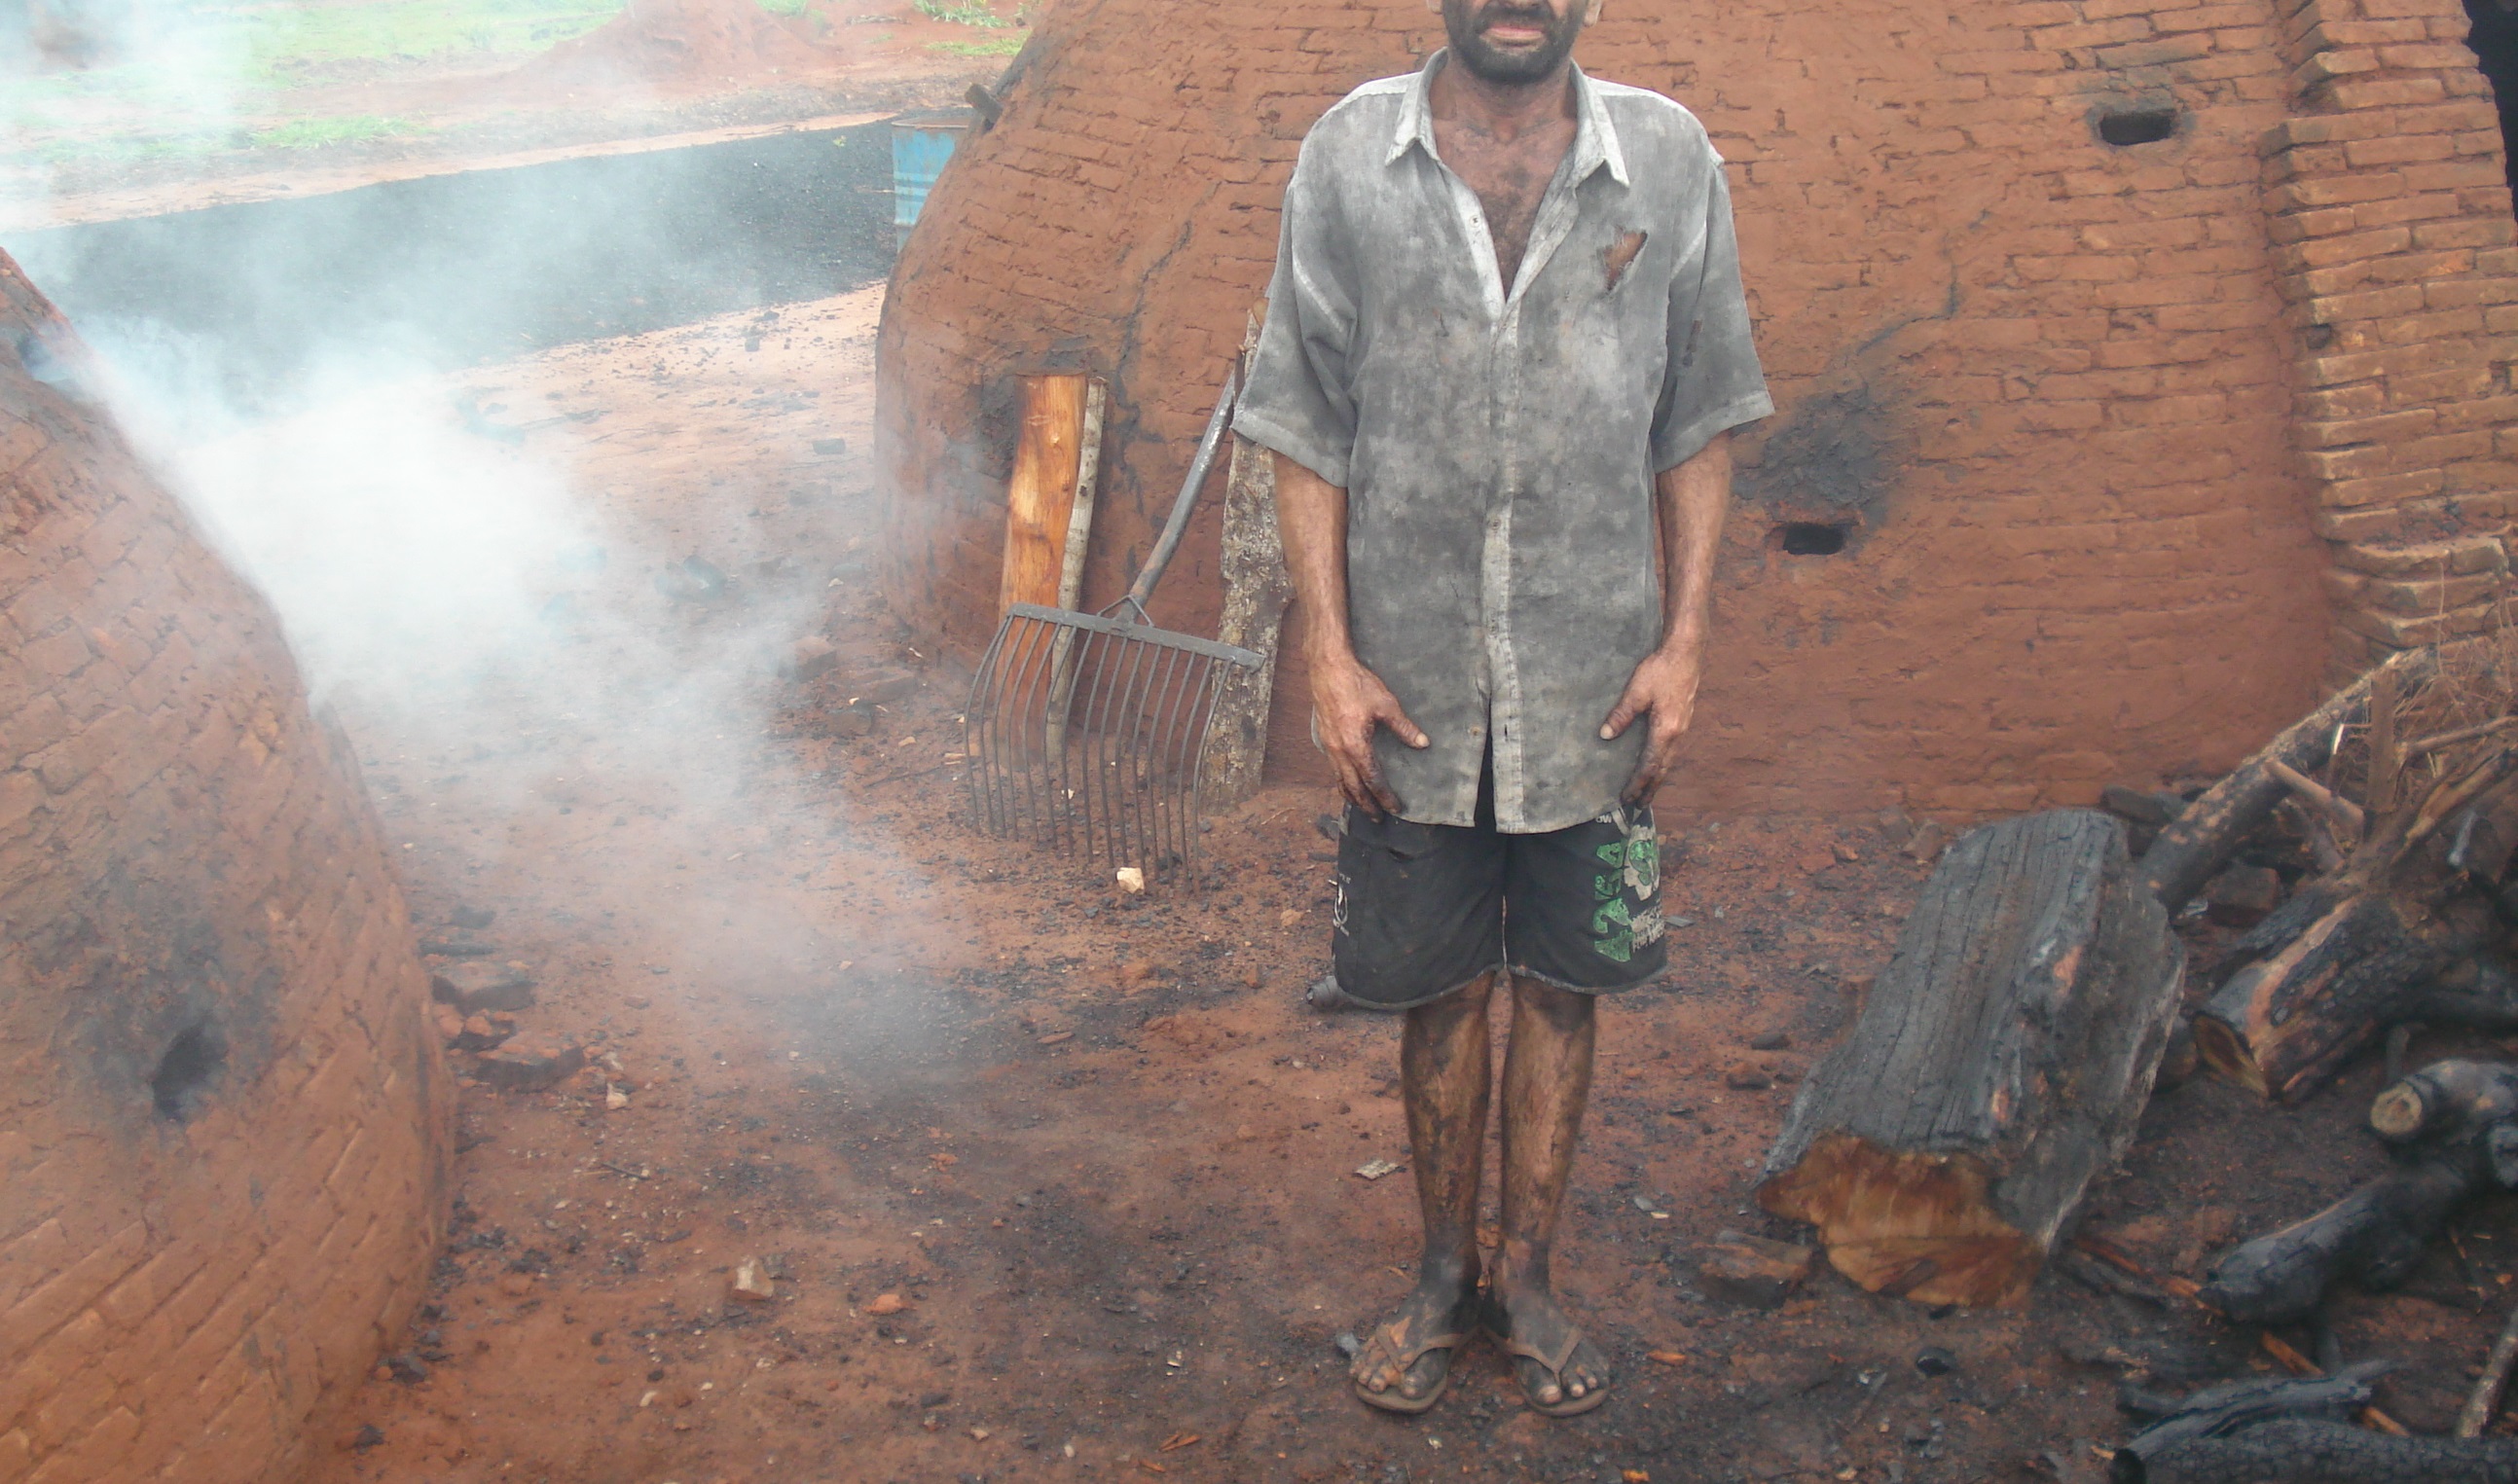 Trabalhador resgatado em carvoaria em Goiás. Foto: Divulgação/SRTE-GO